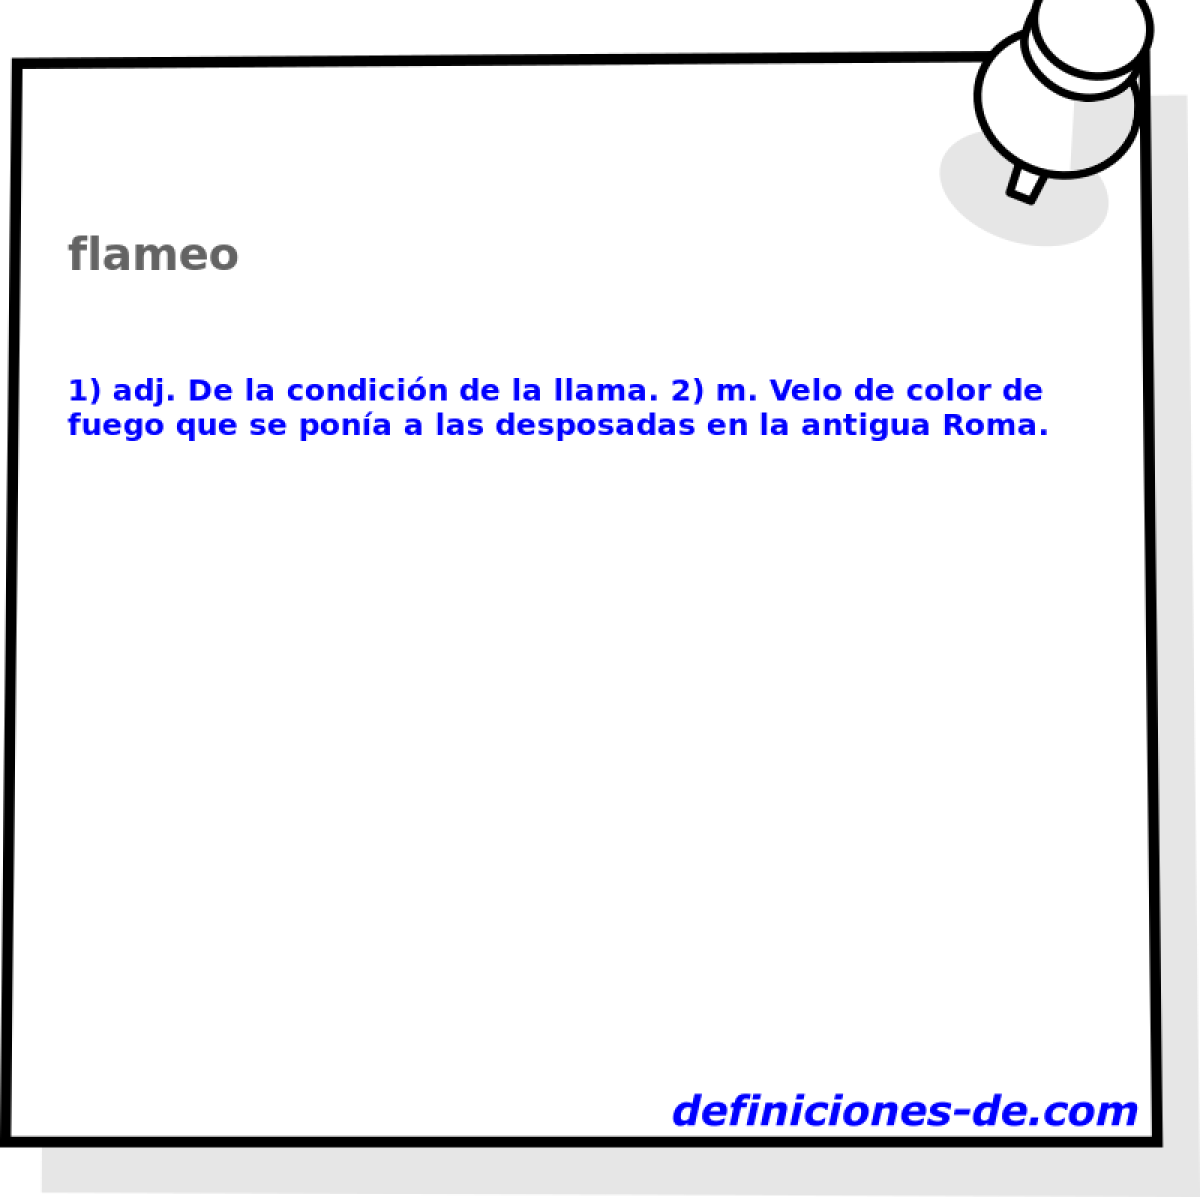 flameo 